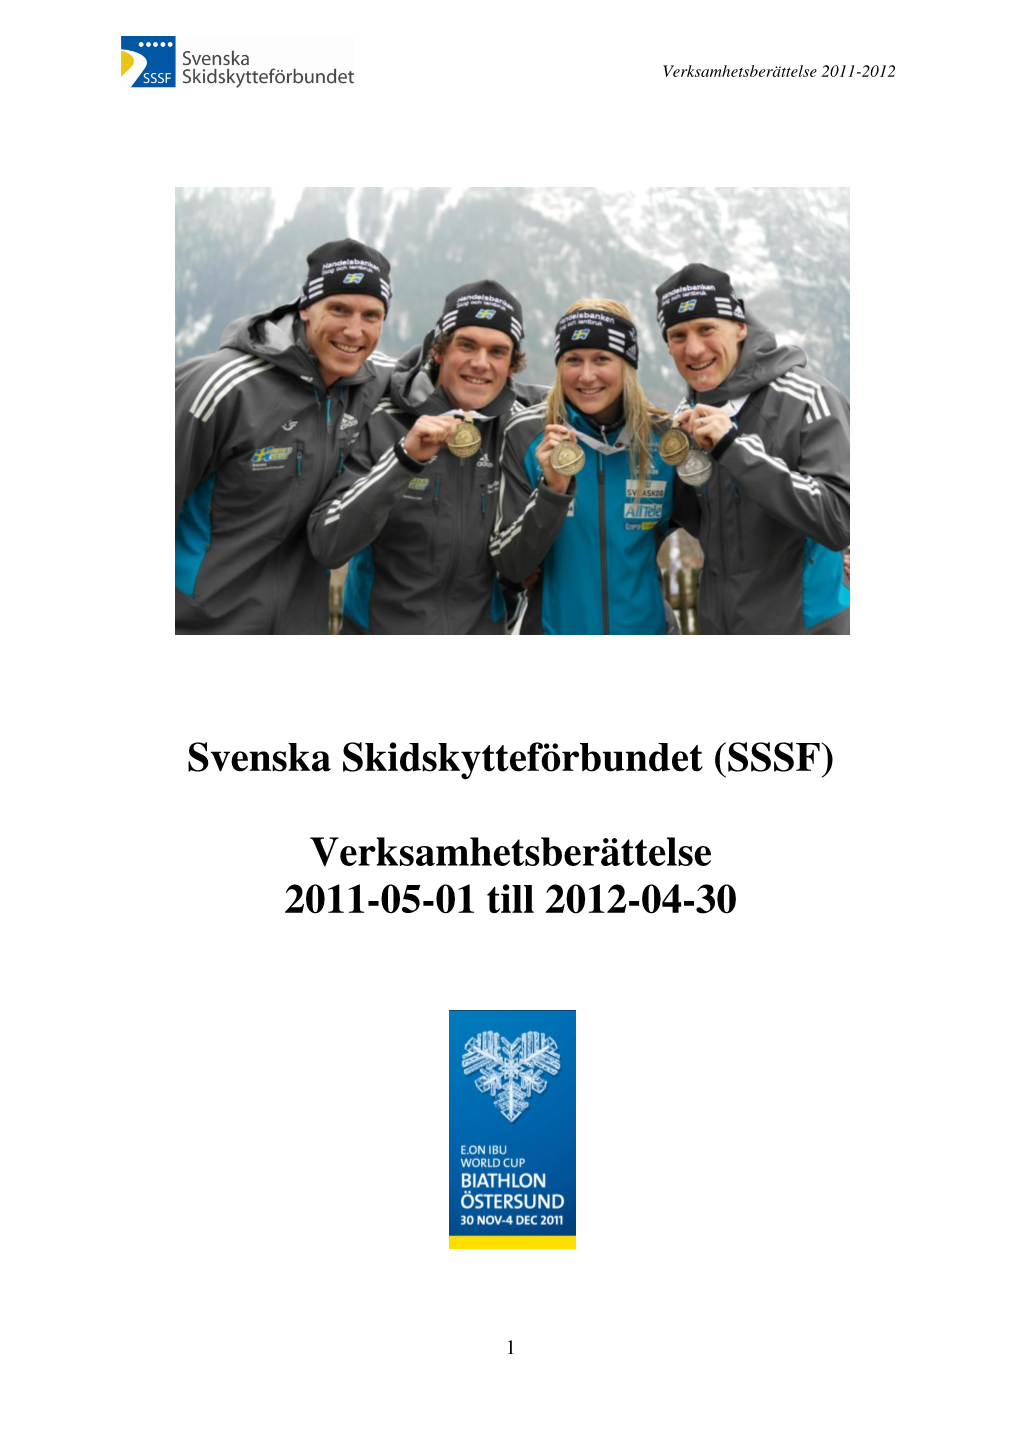 Svenska Skidskytteförbundet (SSSF) Verksamhetsberättelse 2011-05-01